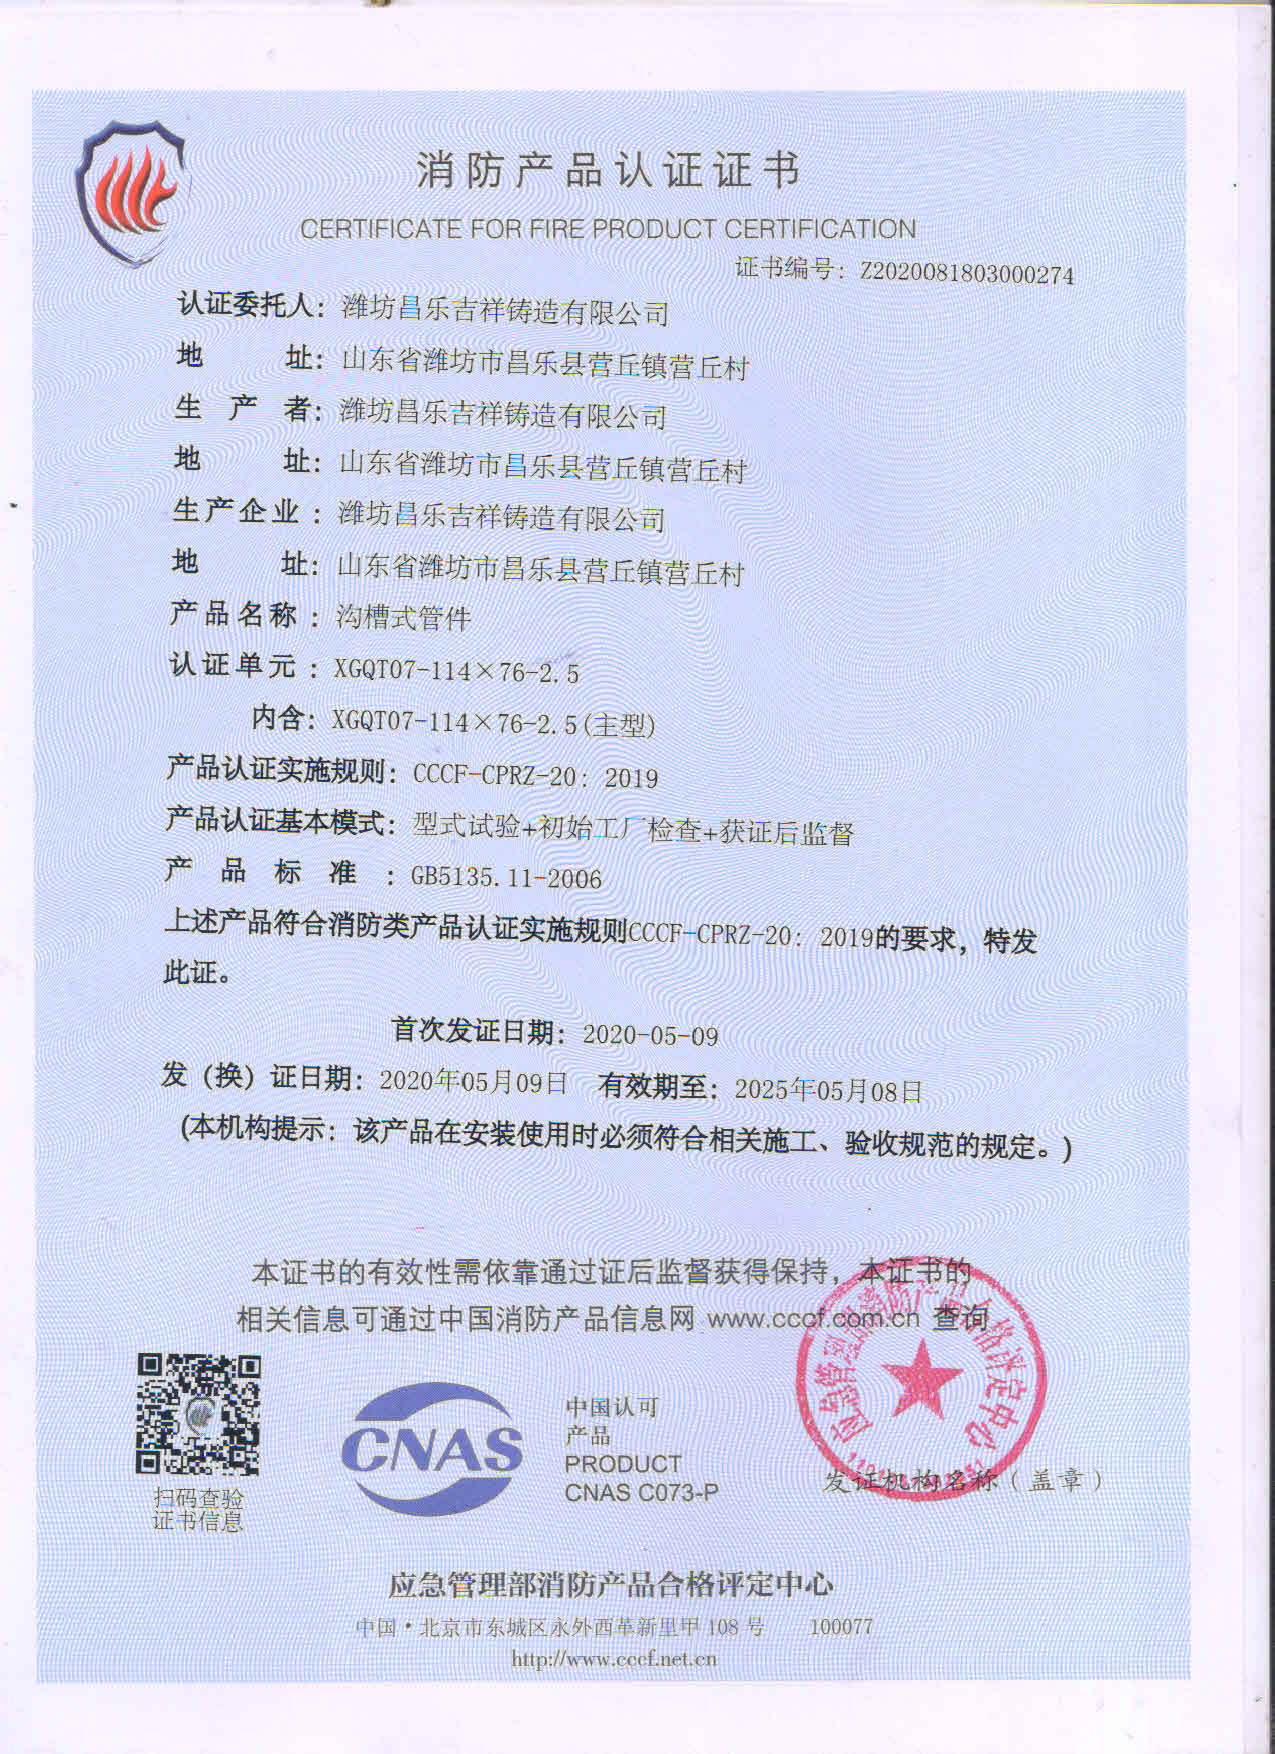 Certificado de certificación de productos contra incendios